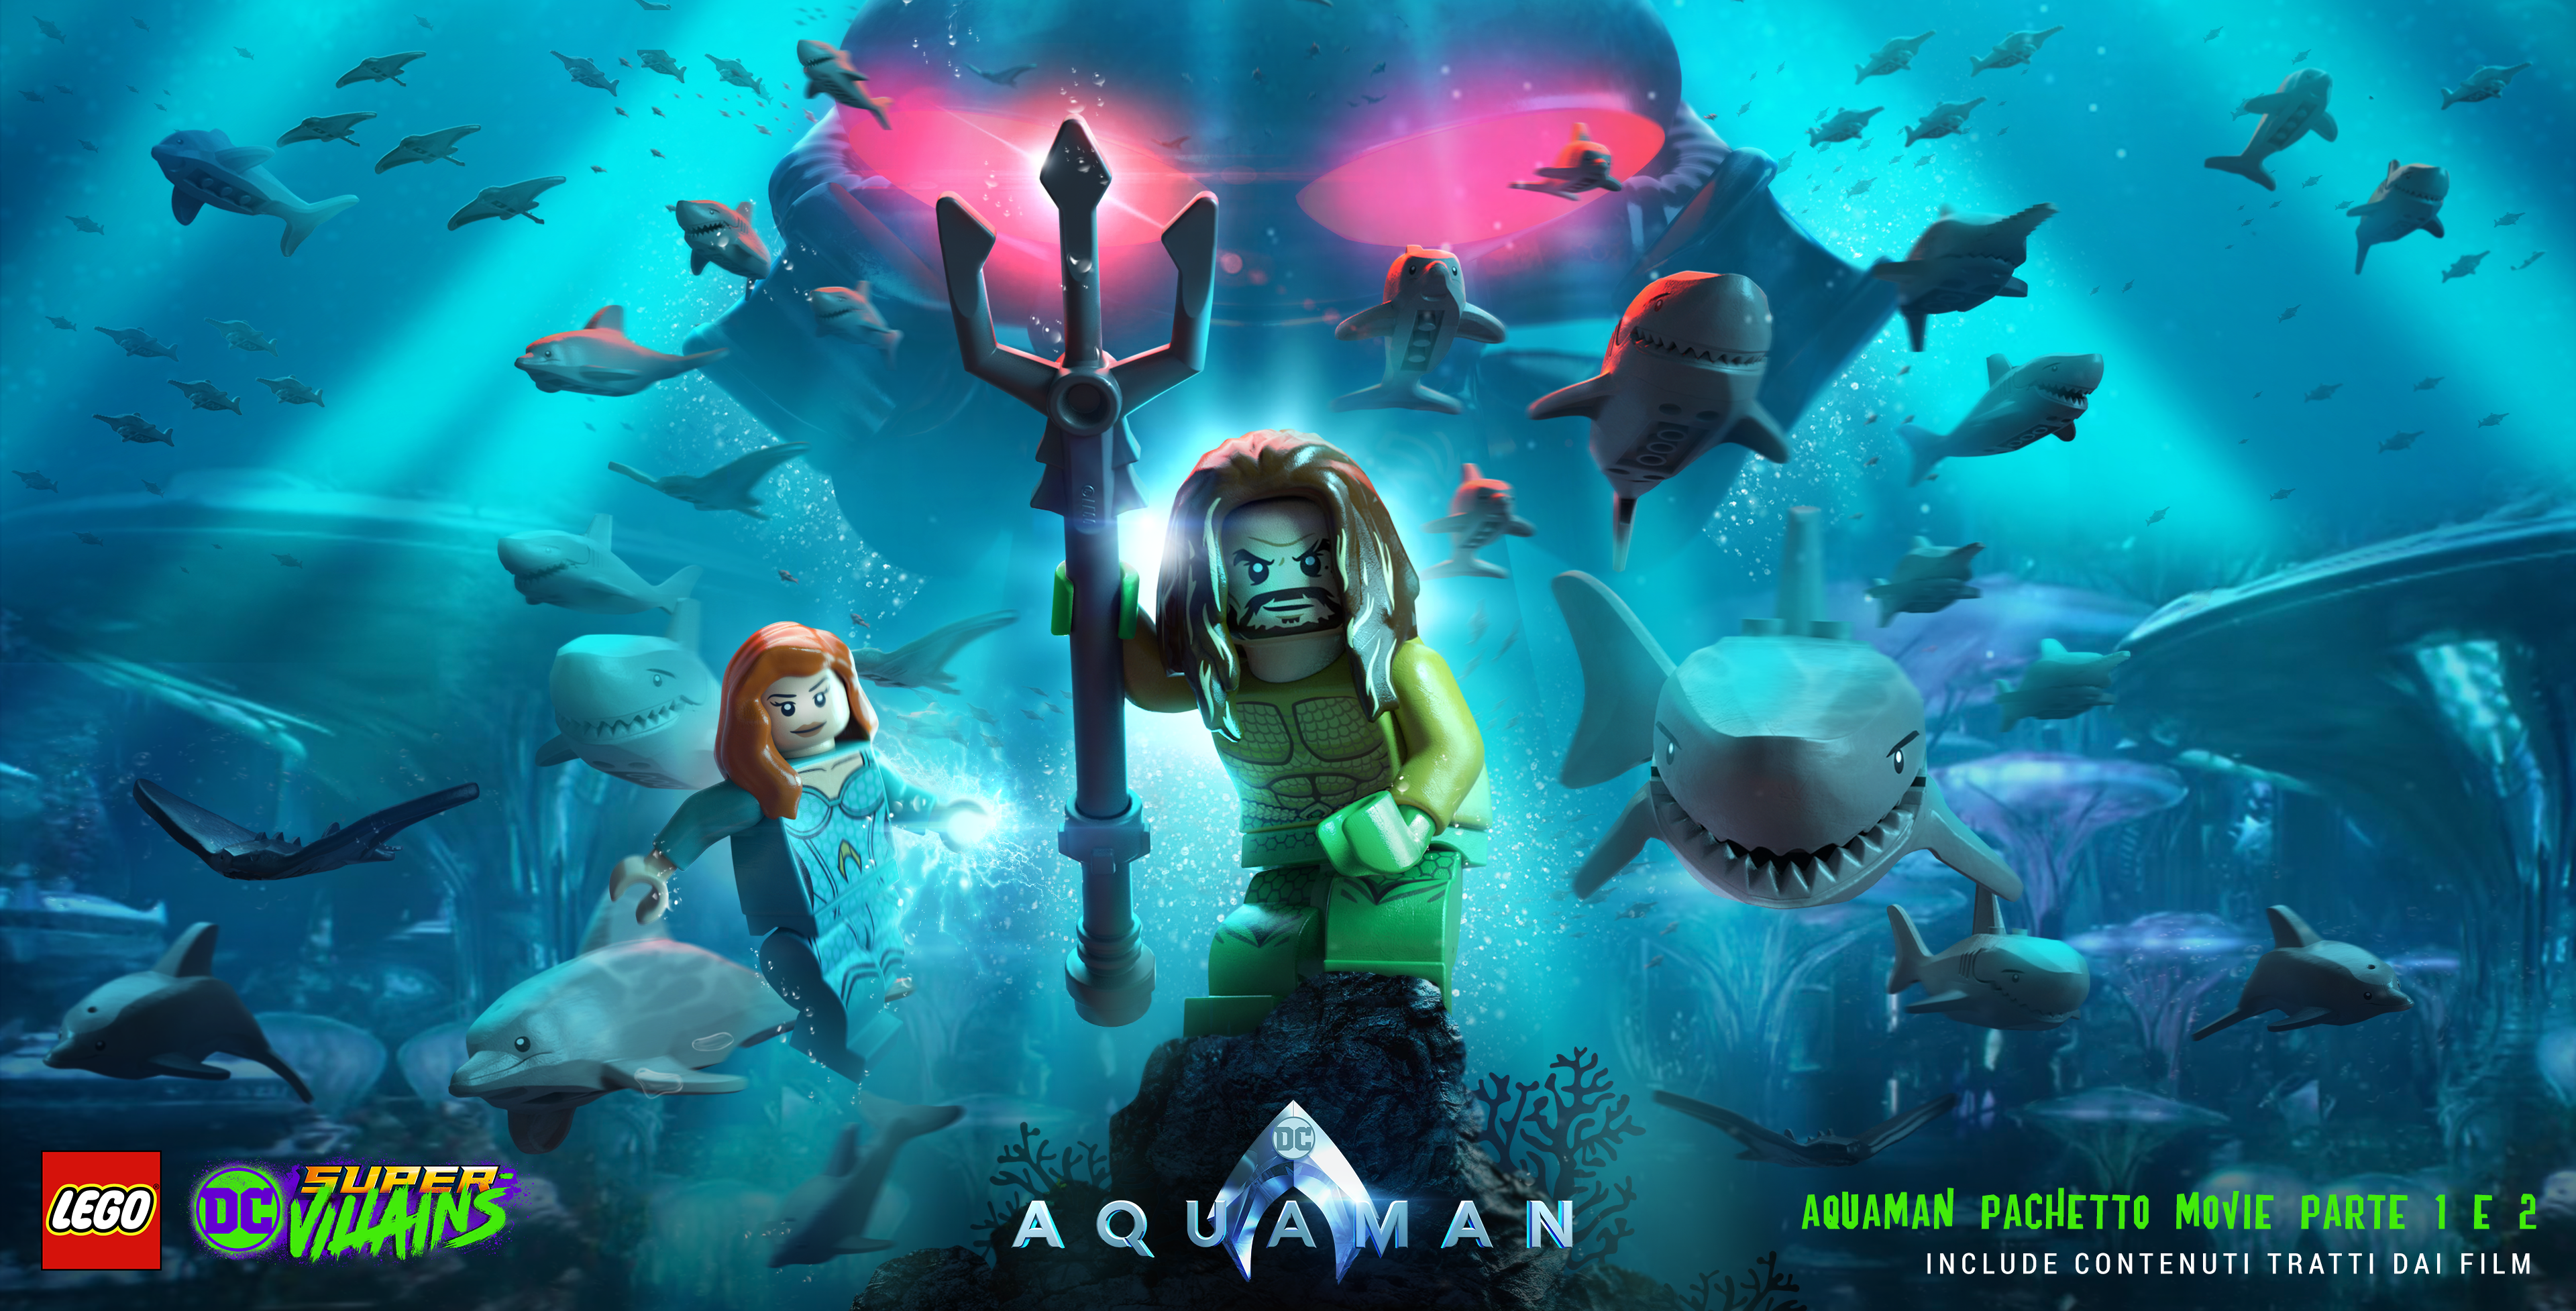 LEGO DC Super-Villains, svelata la data d'arrivo per i pacchetti Aquaman thumbnail